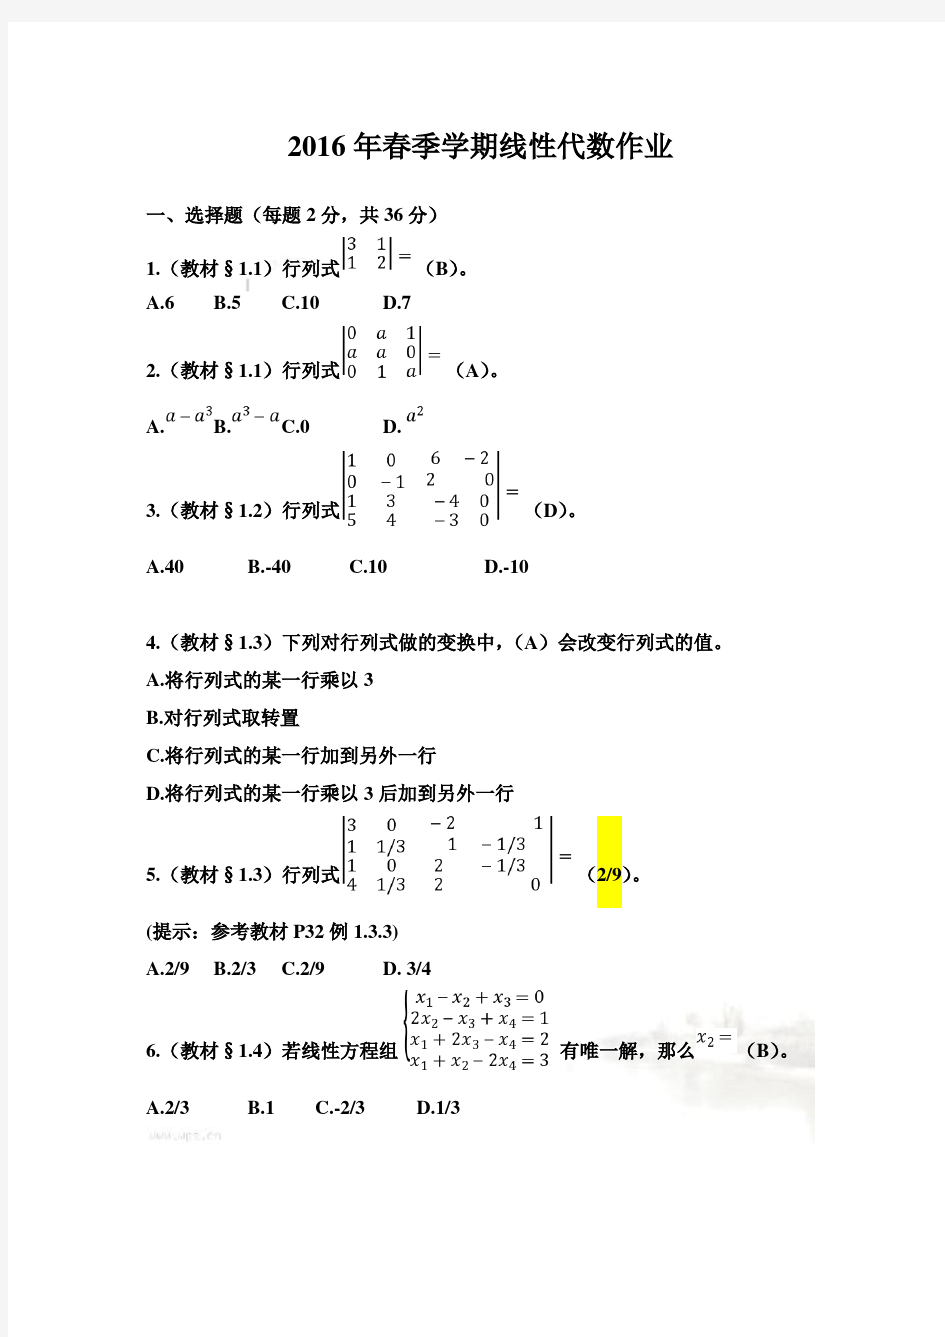 标准答案-北京大学2016年春季学期线性代数作业